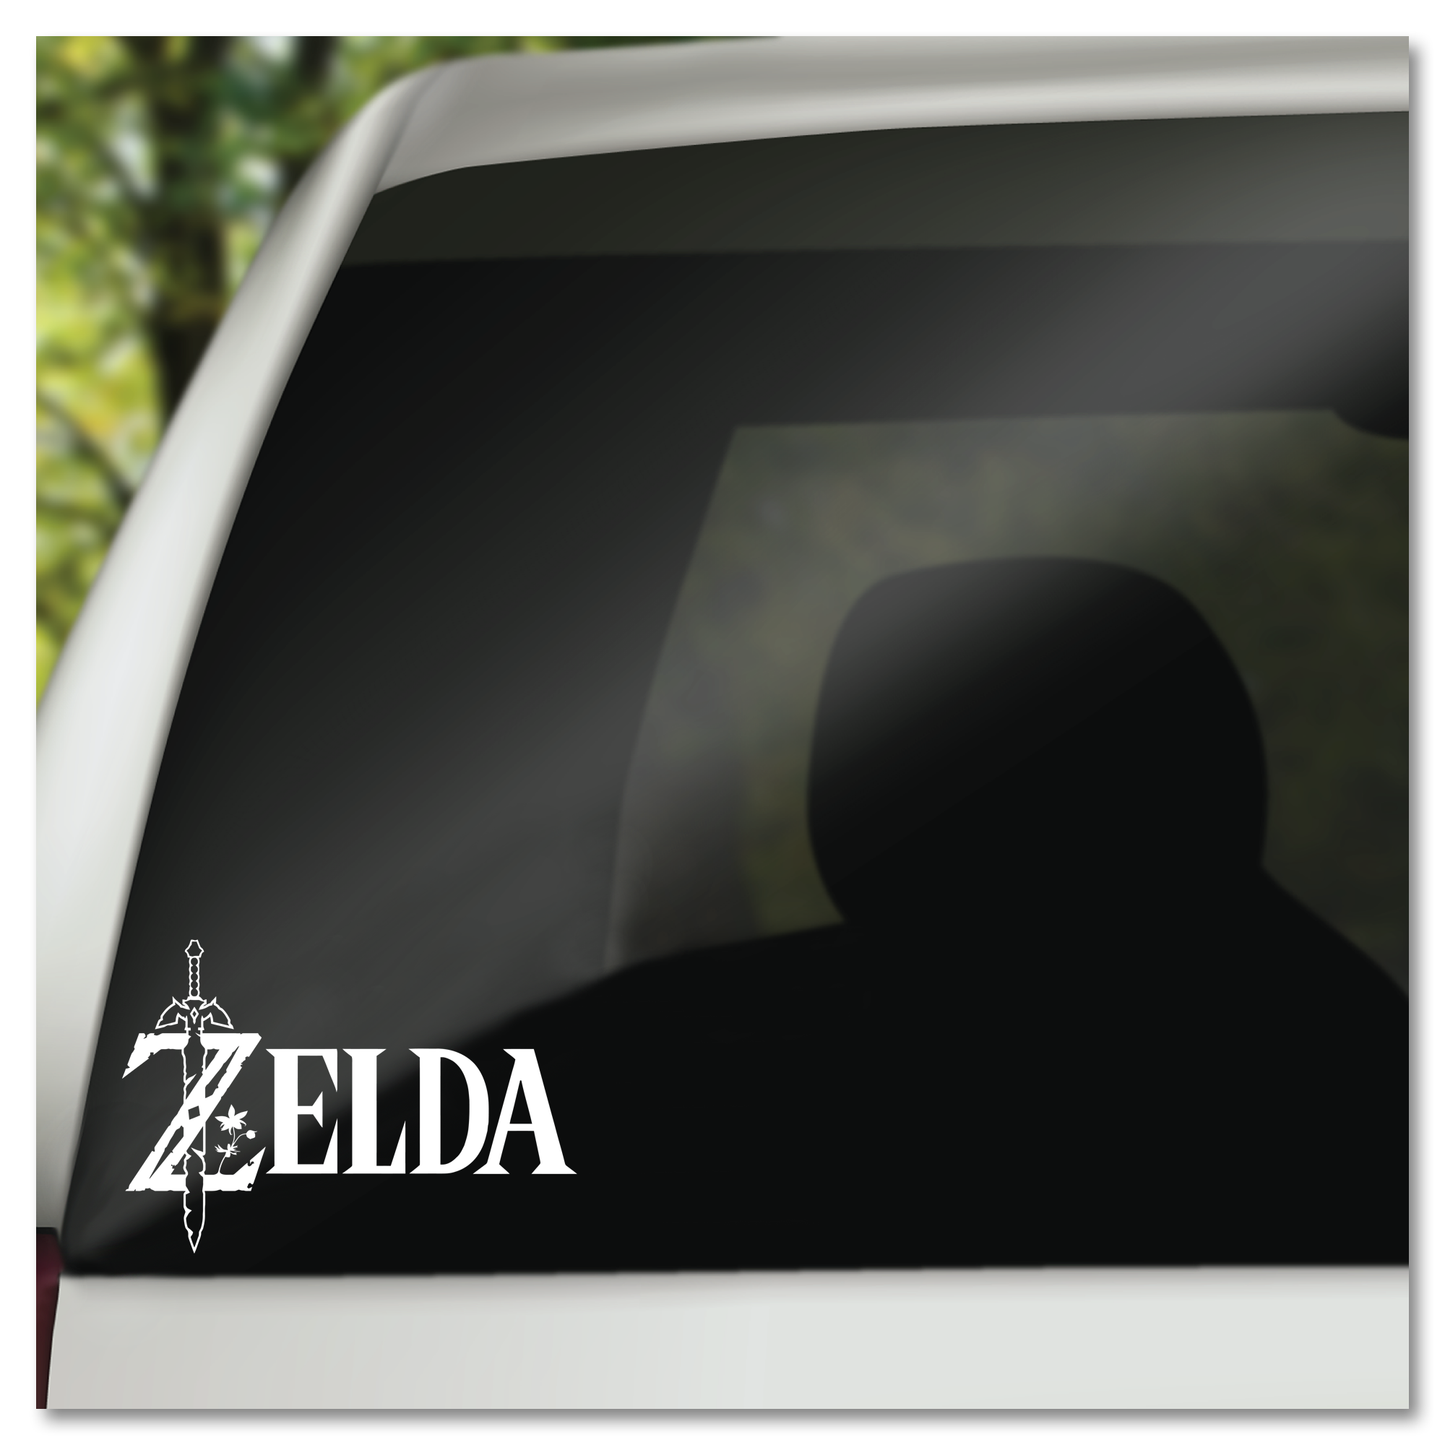 Legend of Zelda Name Sword Vinyl Decal Sticker